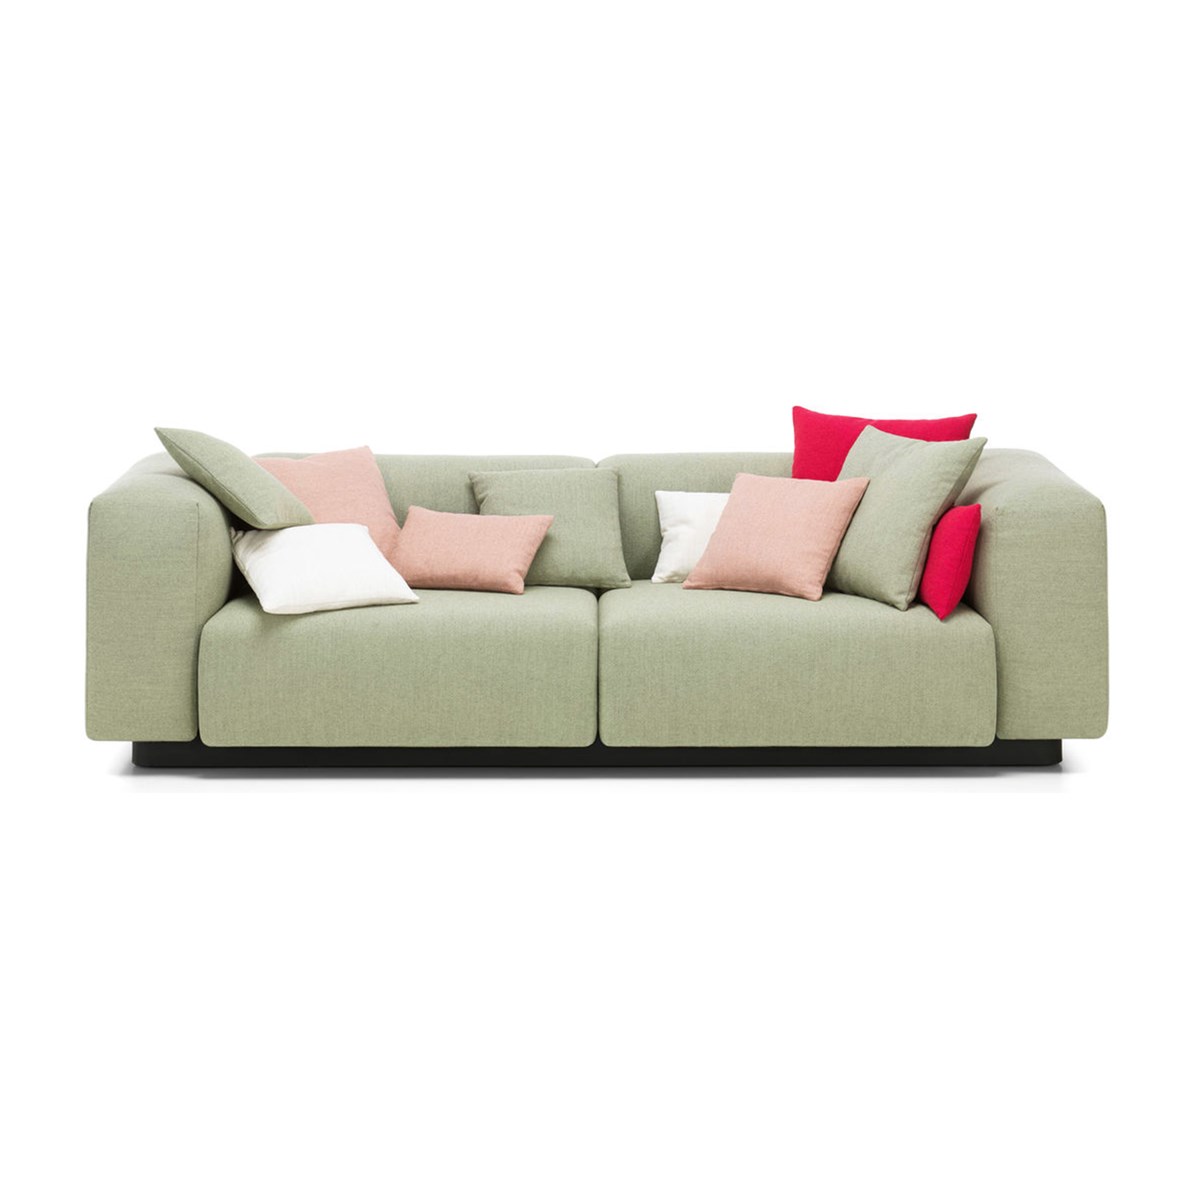 Vitra-Jasper-Morrison-Soft-Modular-Sofa-Matisse-1